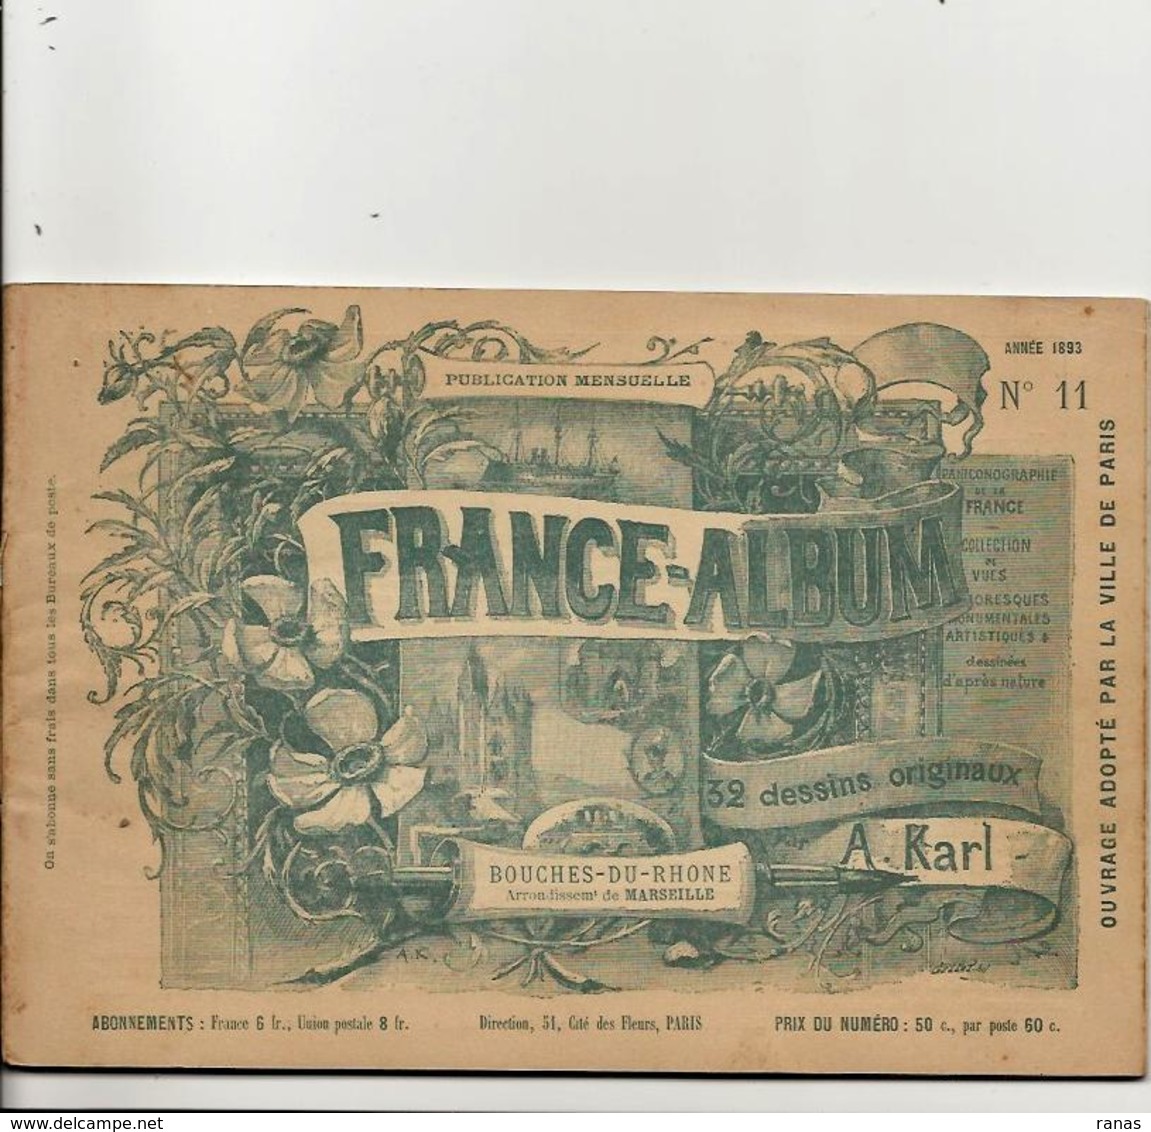 Bouches Du Rhône 13 France Album De A. KARL, Carte Gravures Texte Publicités 1893 - Toeristische Brochures